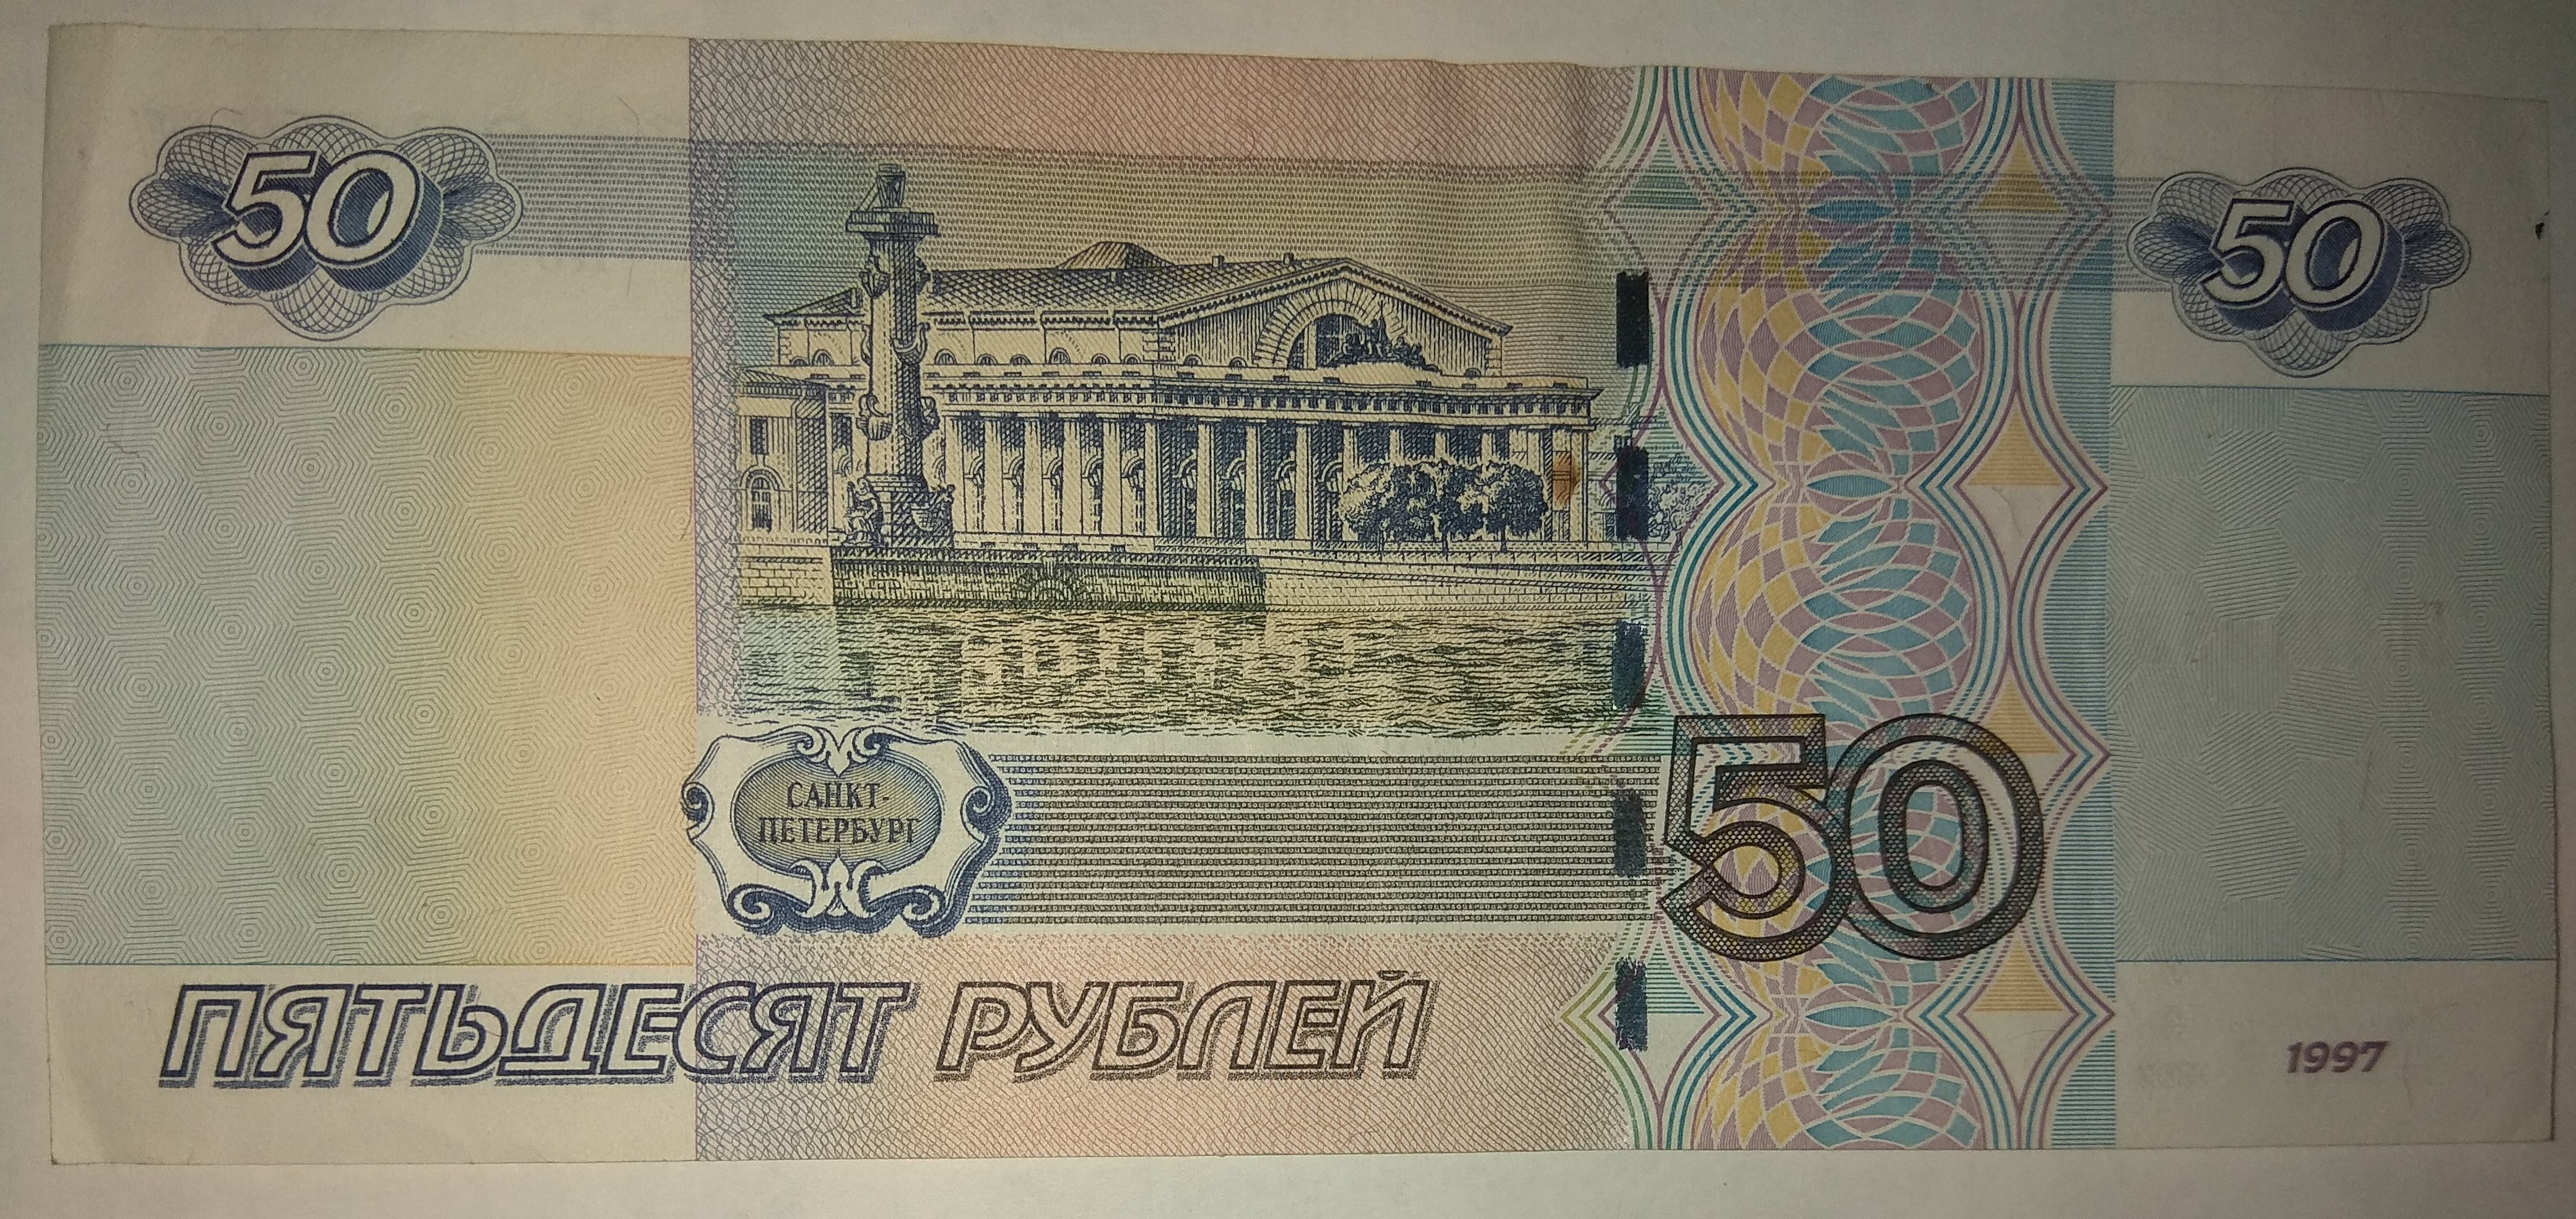 Пятьдесят не меньше. Полтинник 50 рублей бумажные. Российские купюры 50 рублей. Бумажные деньги 50 рублей. 50 Руб бумажные.